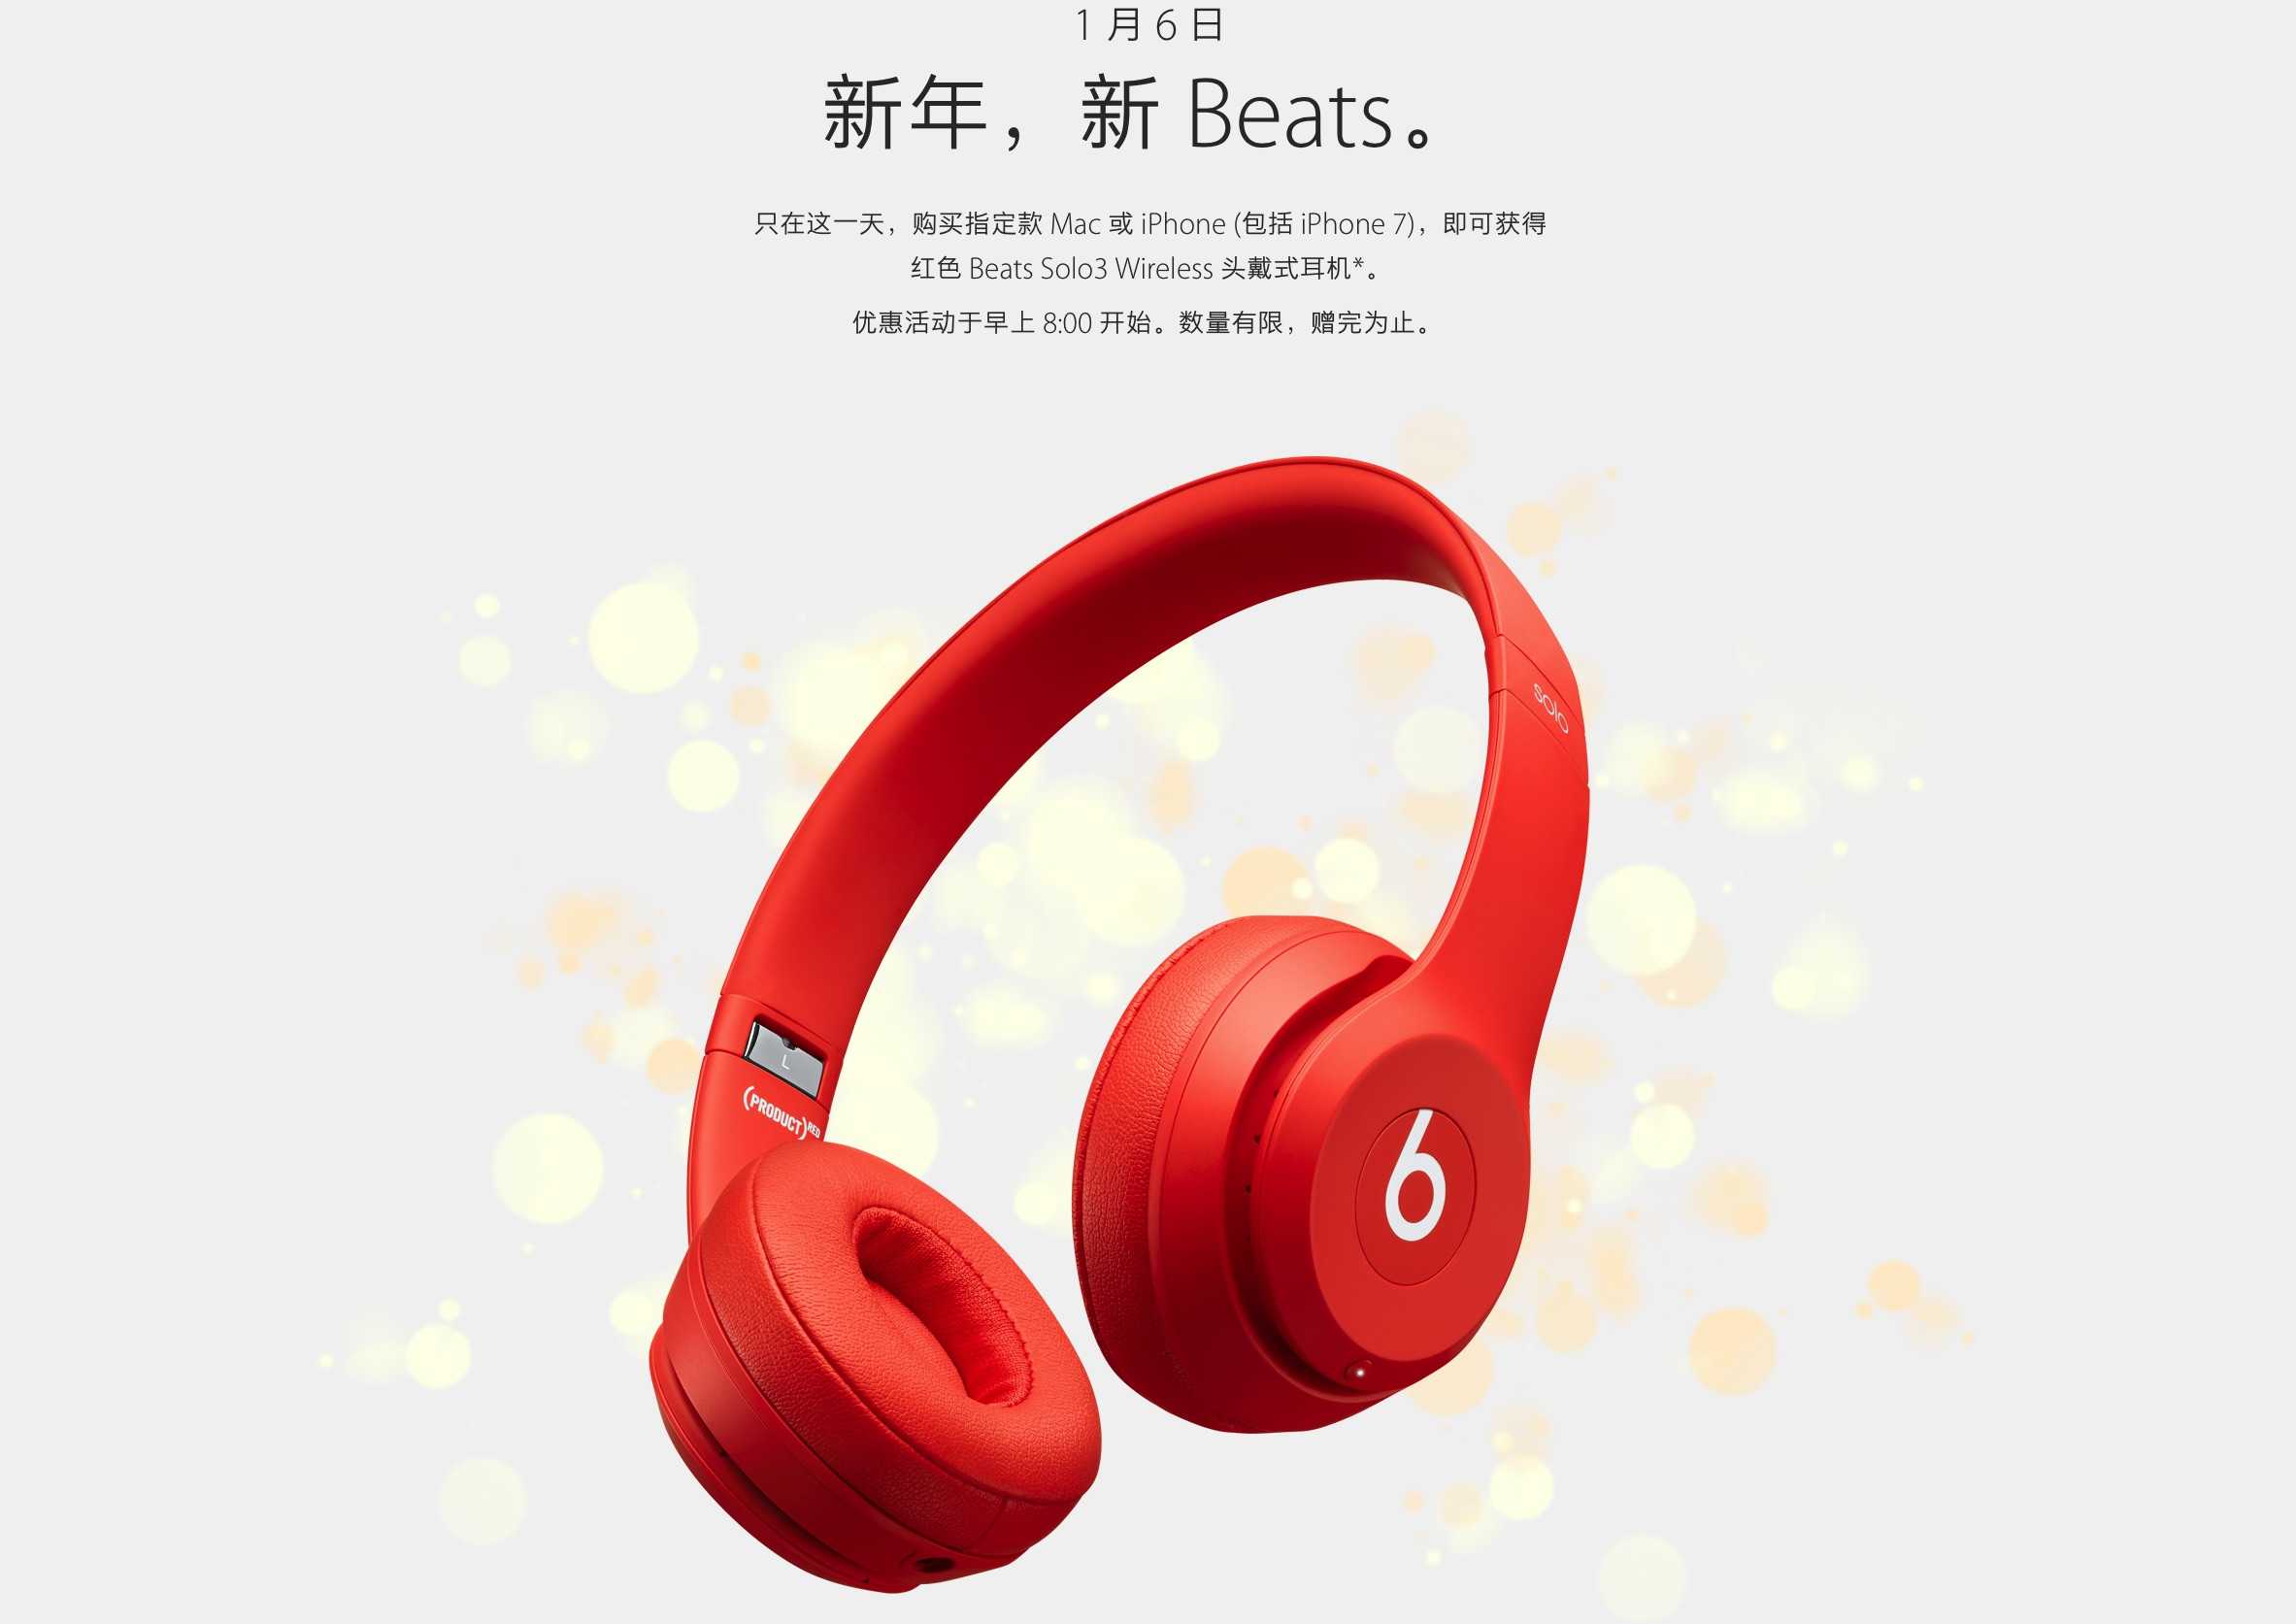 free beats headphones with macbook